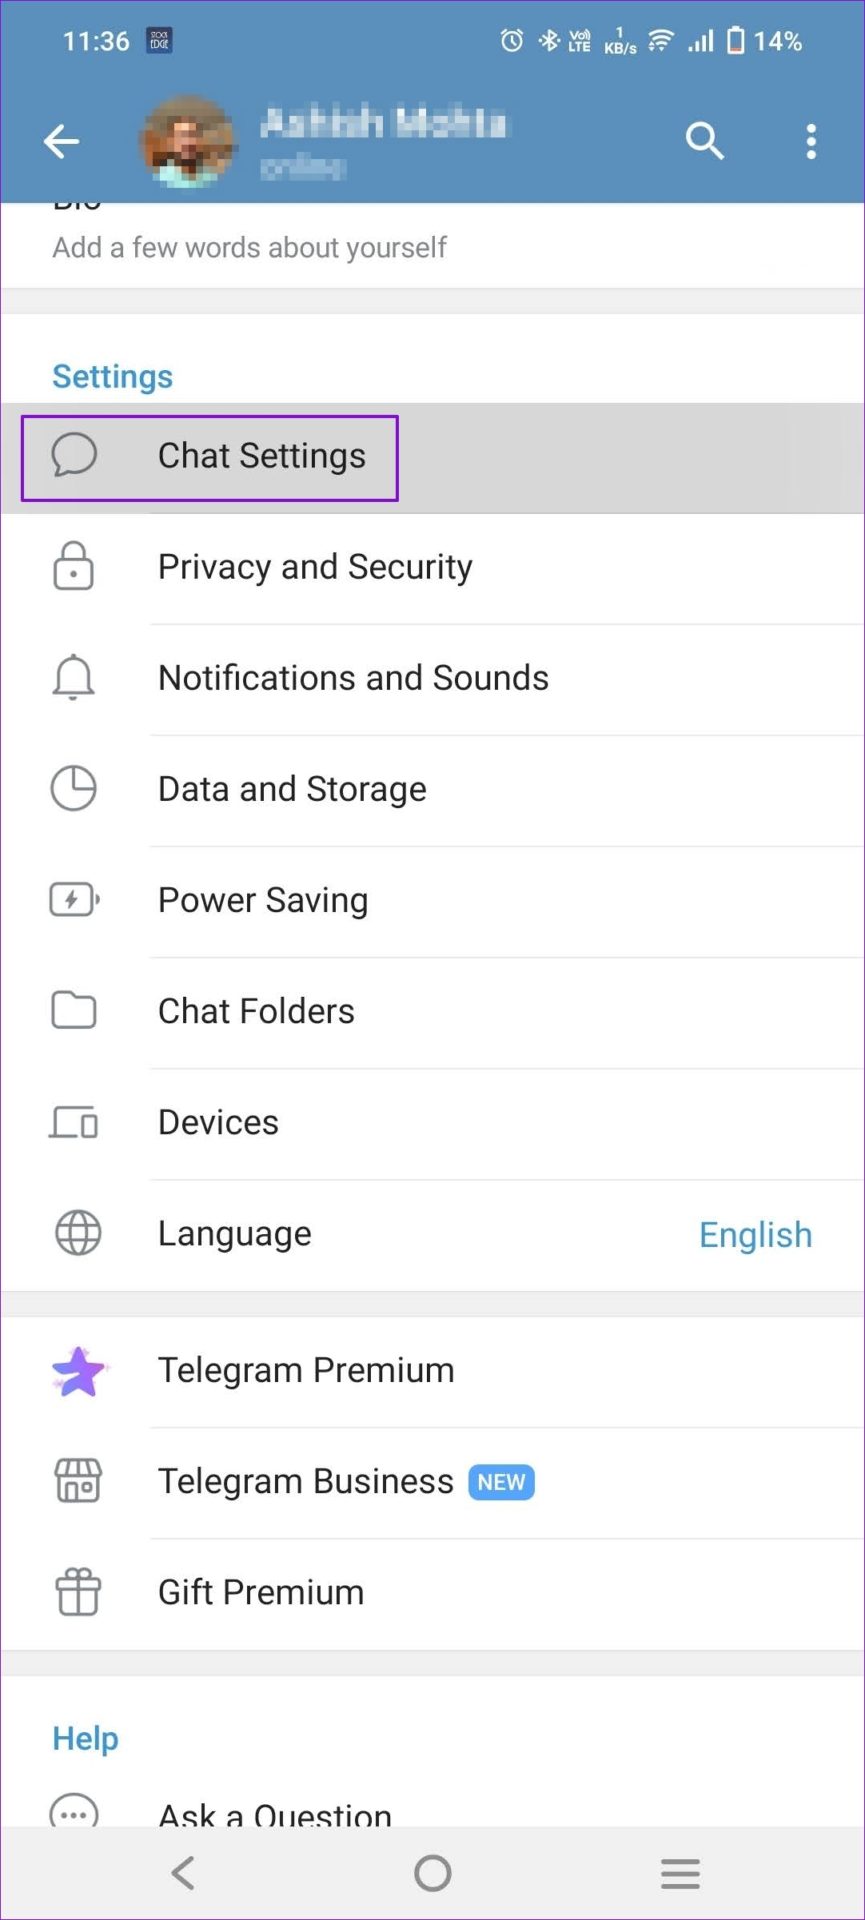 Open Chat Settings telegram Mobile